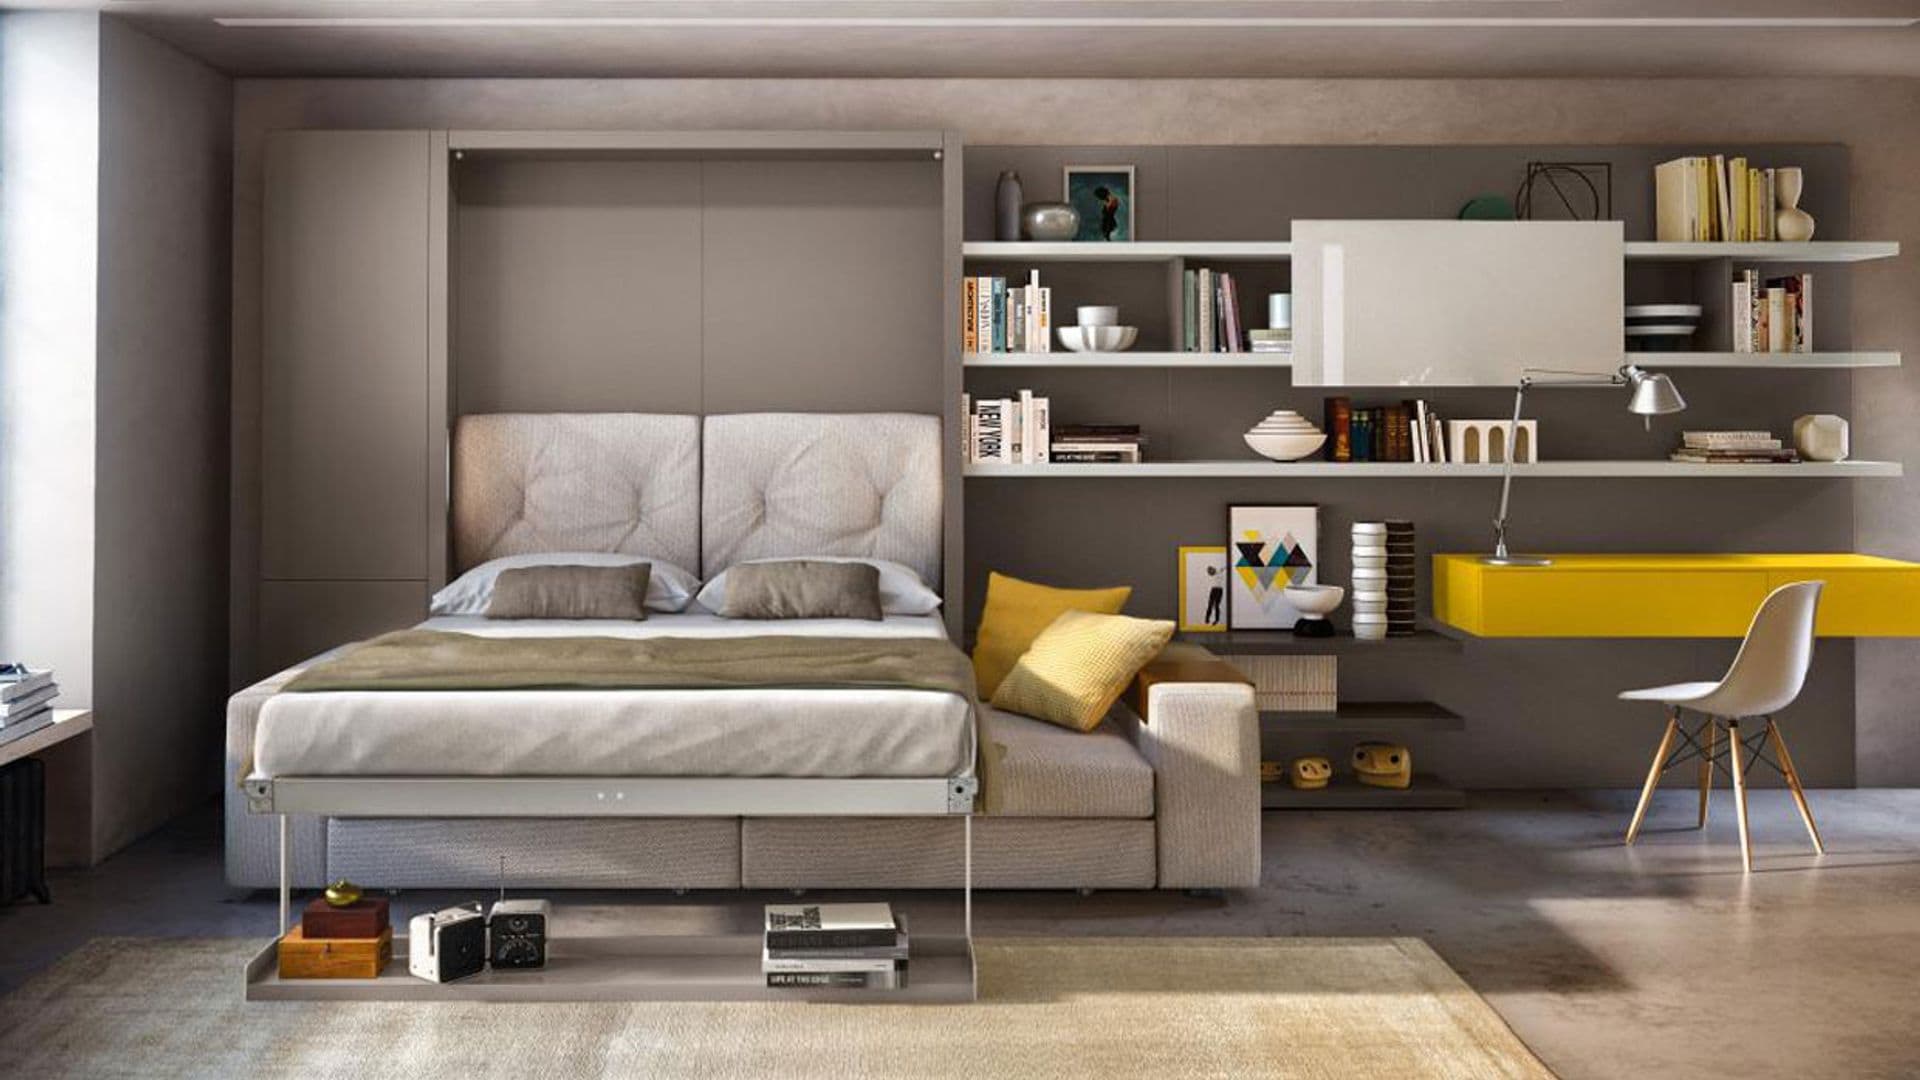 Muebles multifunción que se adaptan a espacios con pocos metros